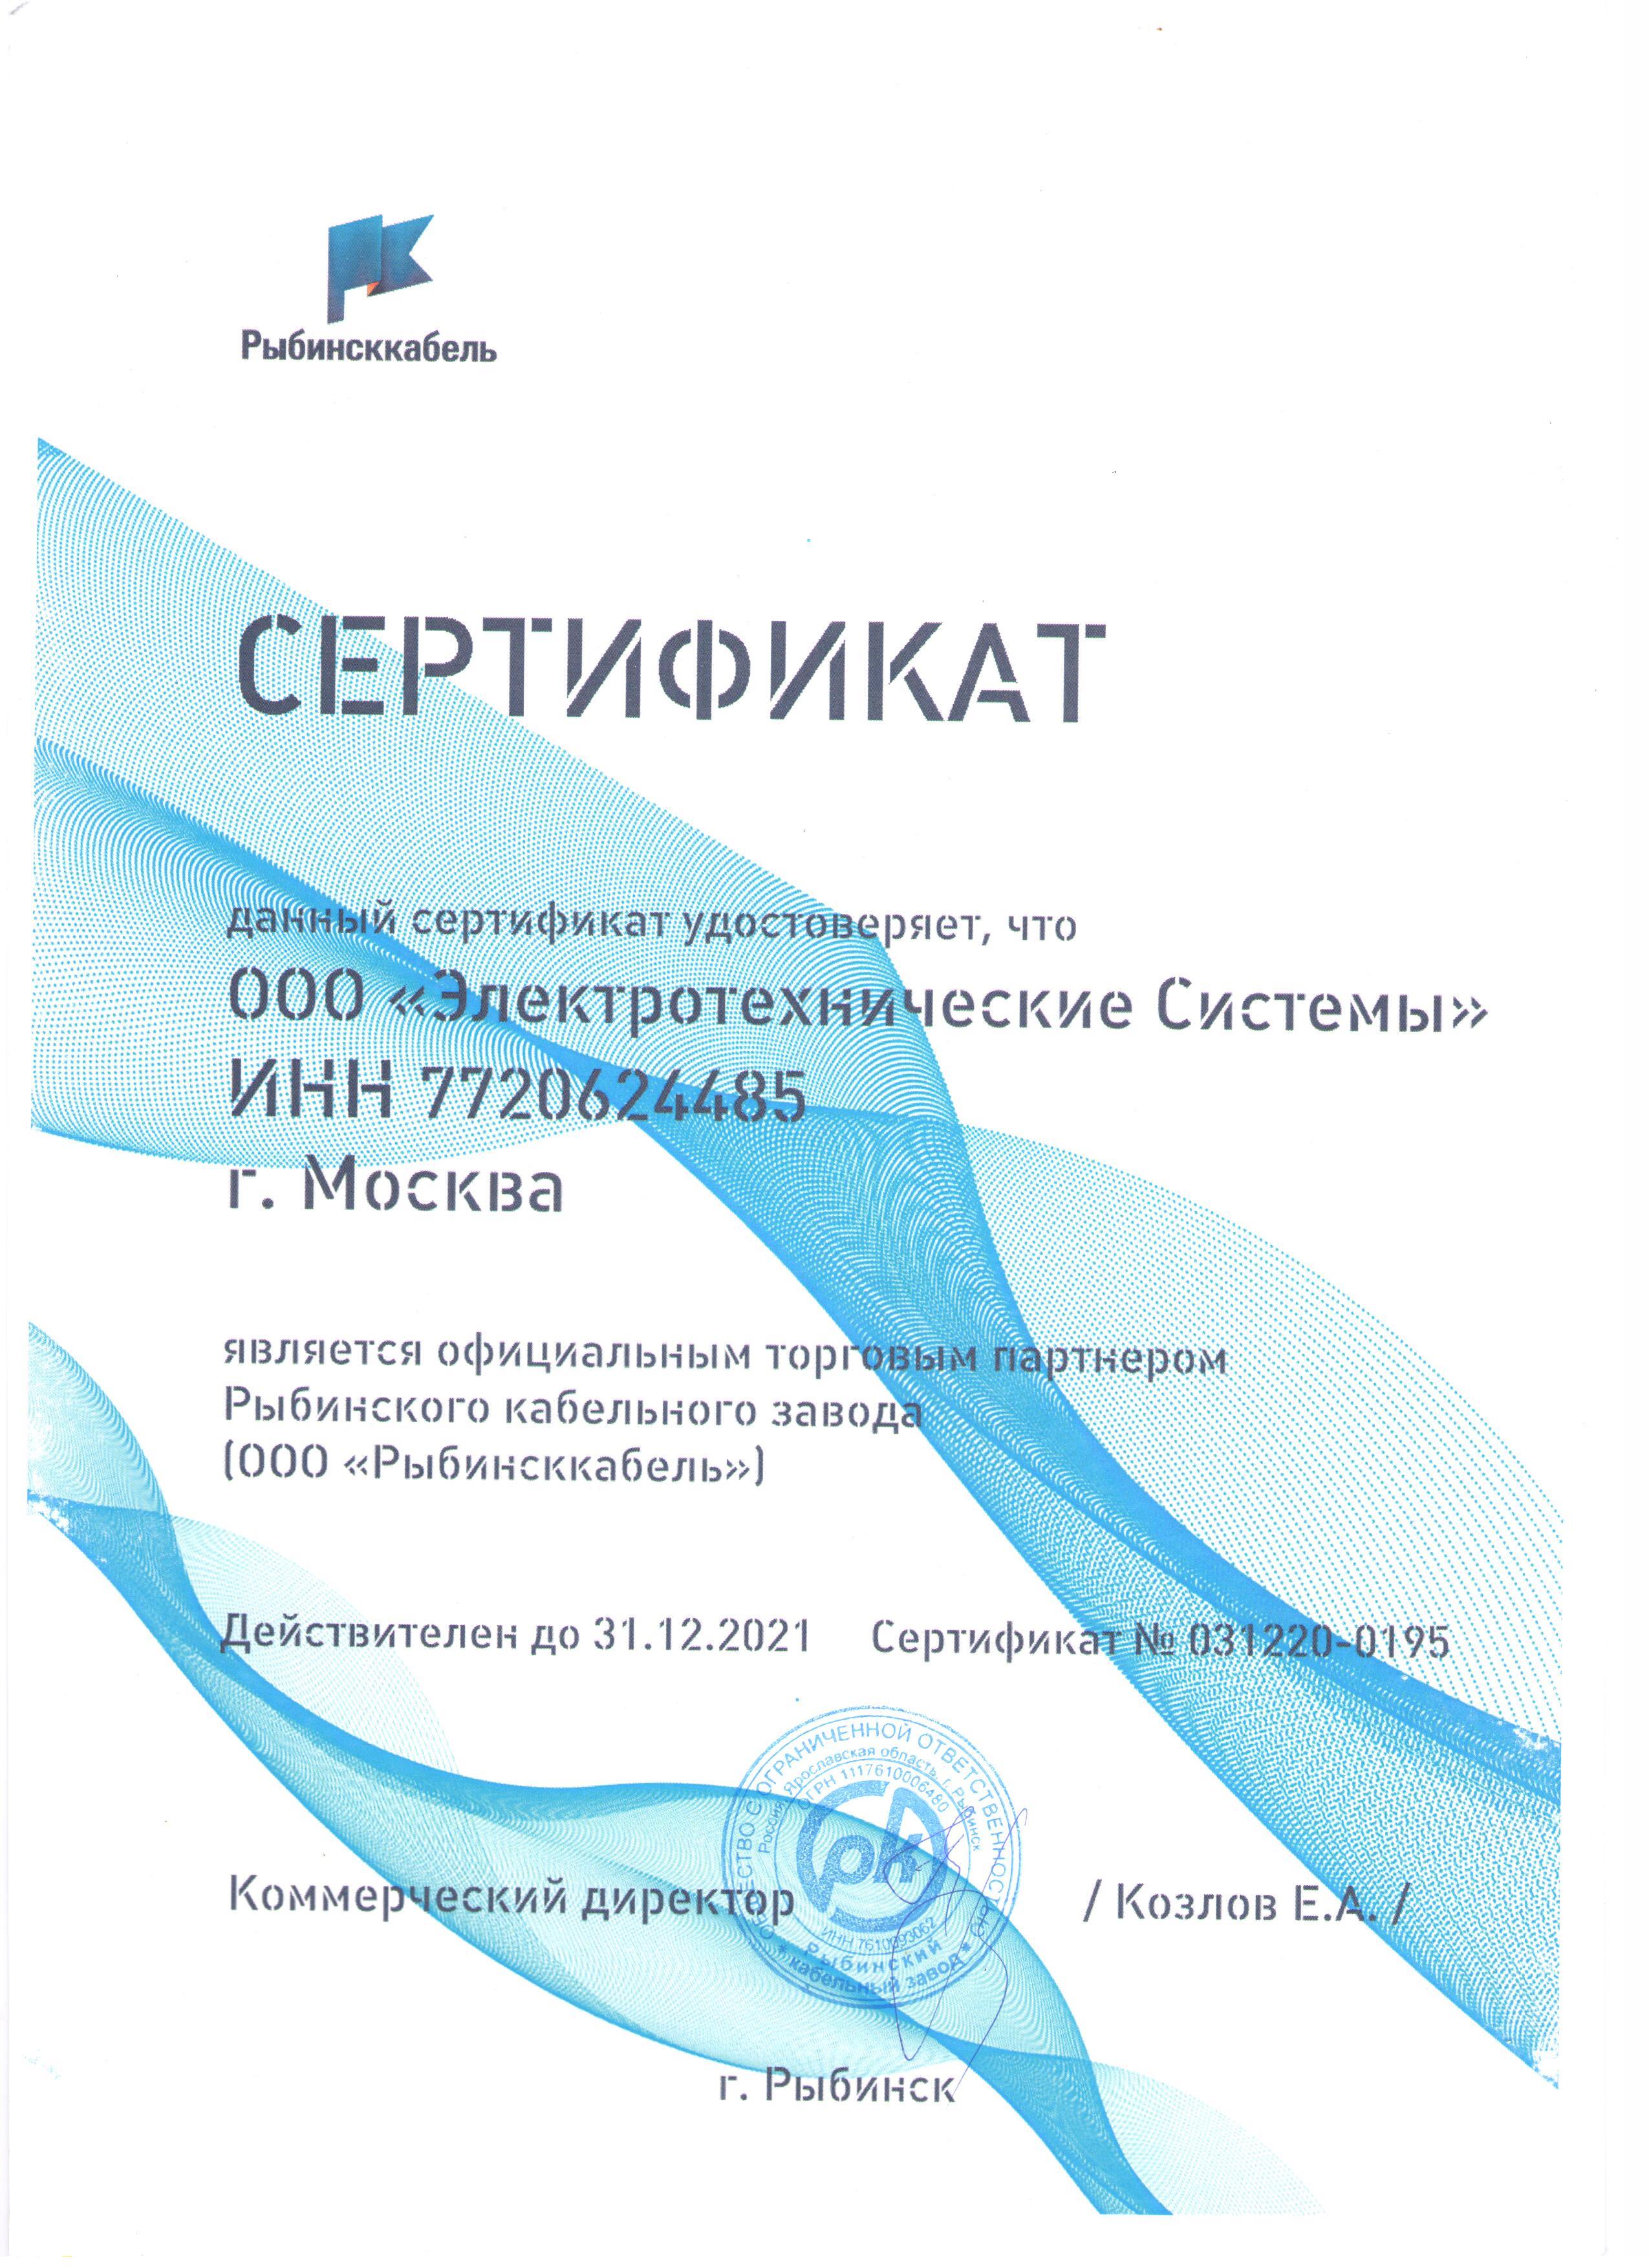 Получен сертификат официального торгового партнера Рыбинского кабельного завода (ООО "Рыбинсккабель"